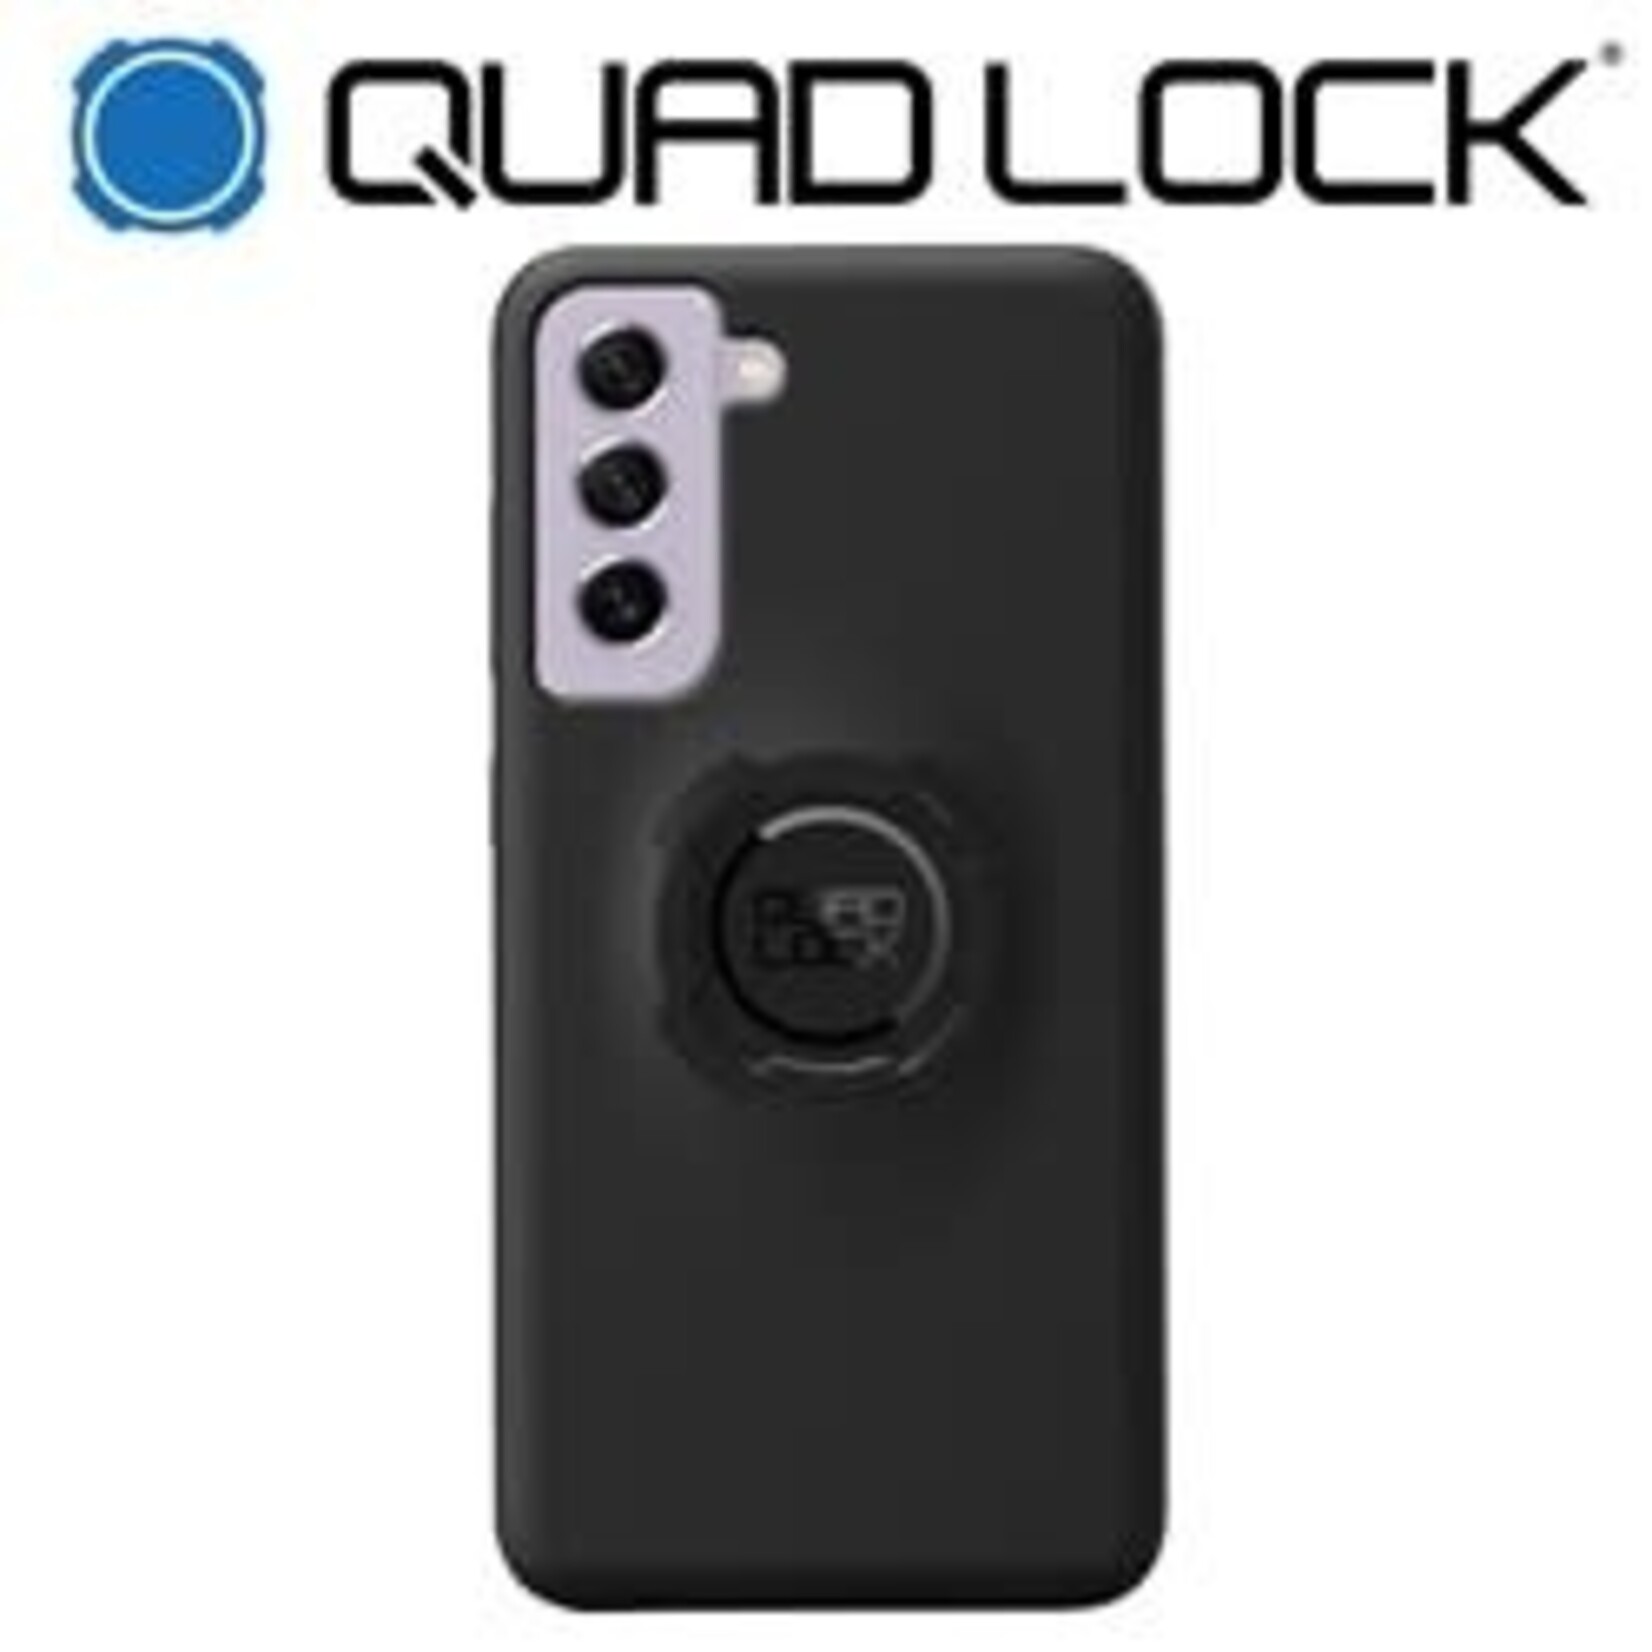 Quad Lock QUADLOCK Samsung Case